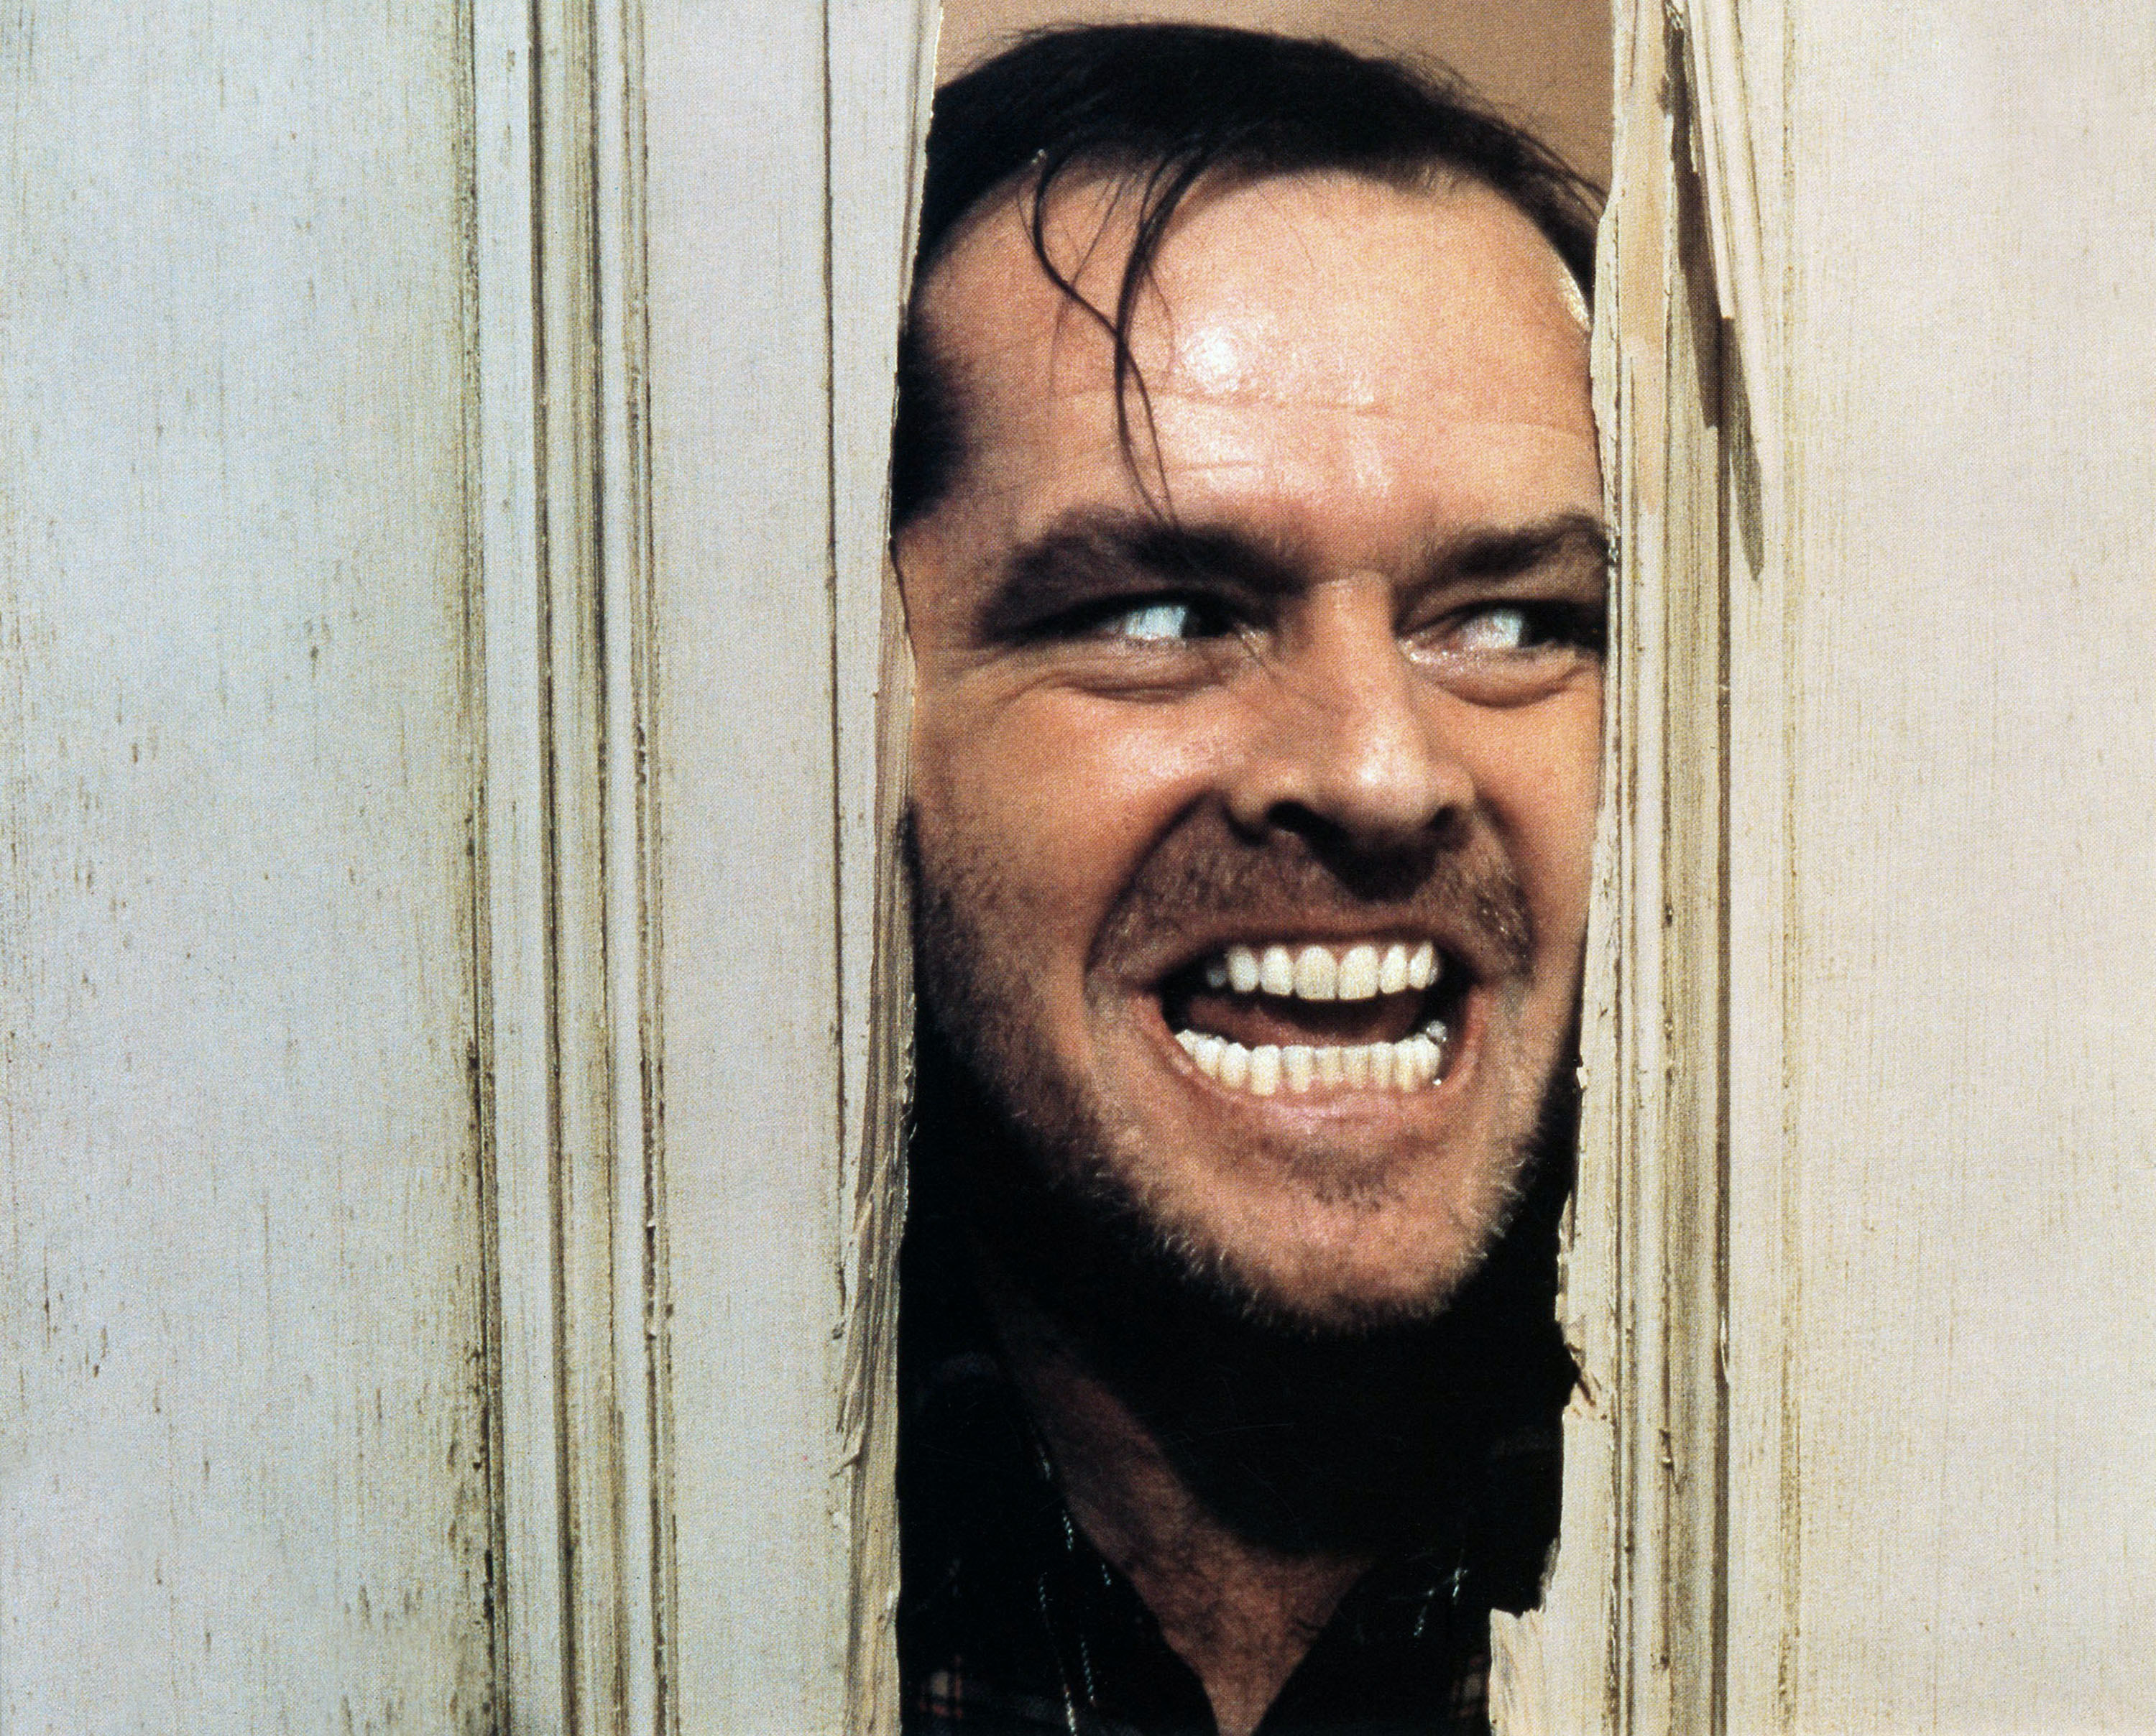 Jack Nicholson breaks through a door